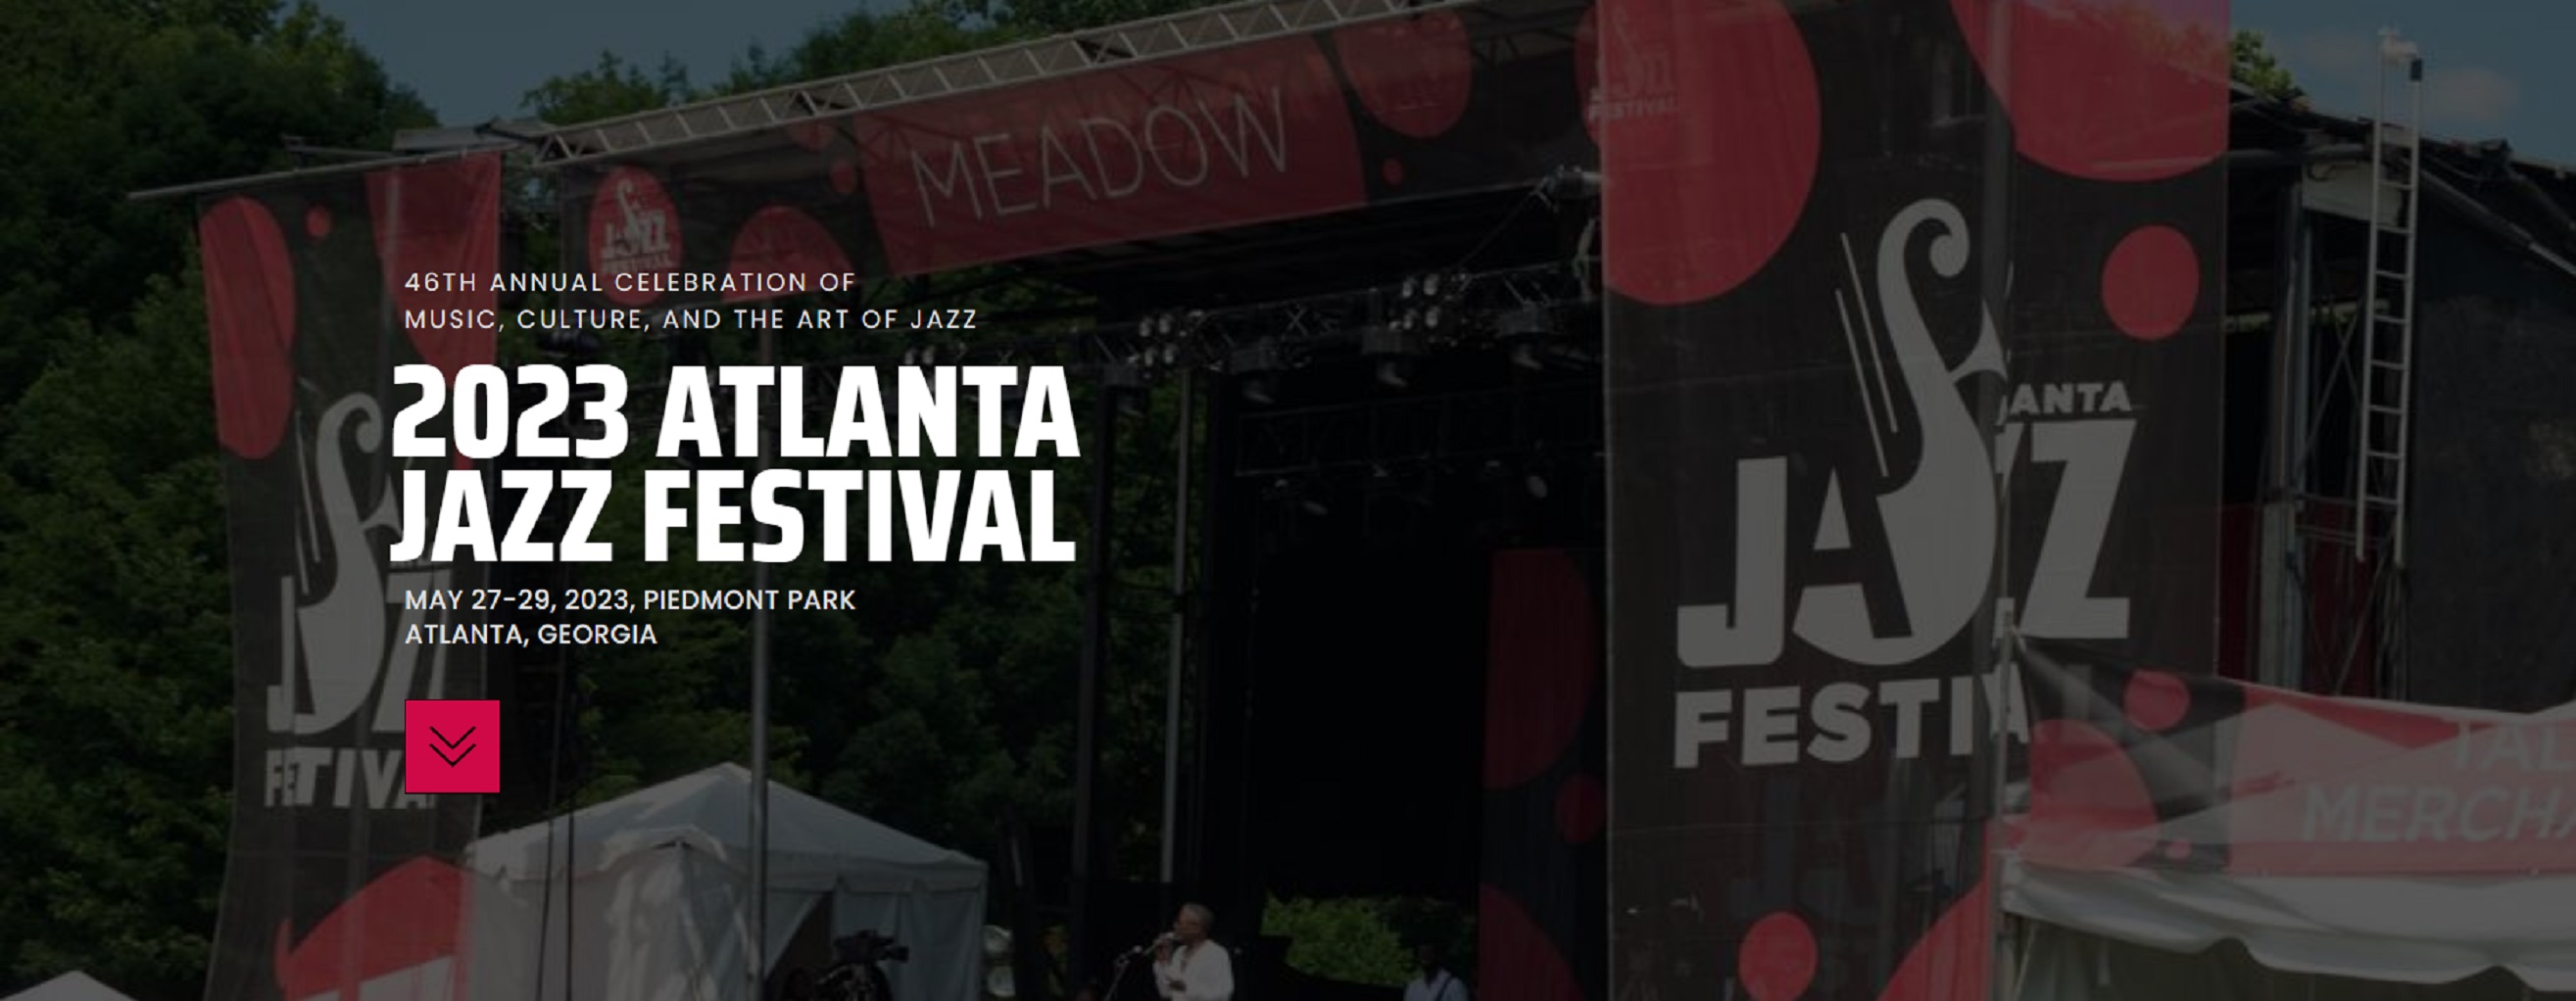 Atlanta Jazz Festival 2023 Announces Lineup in Piedmont Park Grateful Web